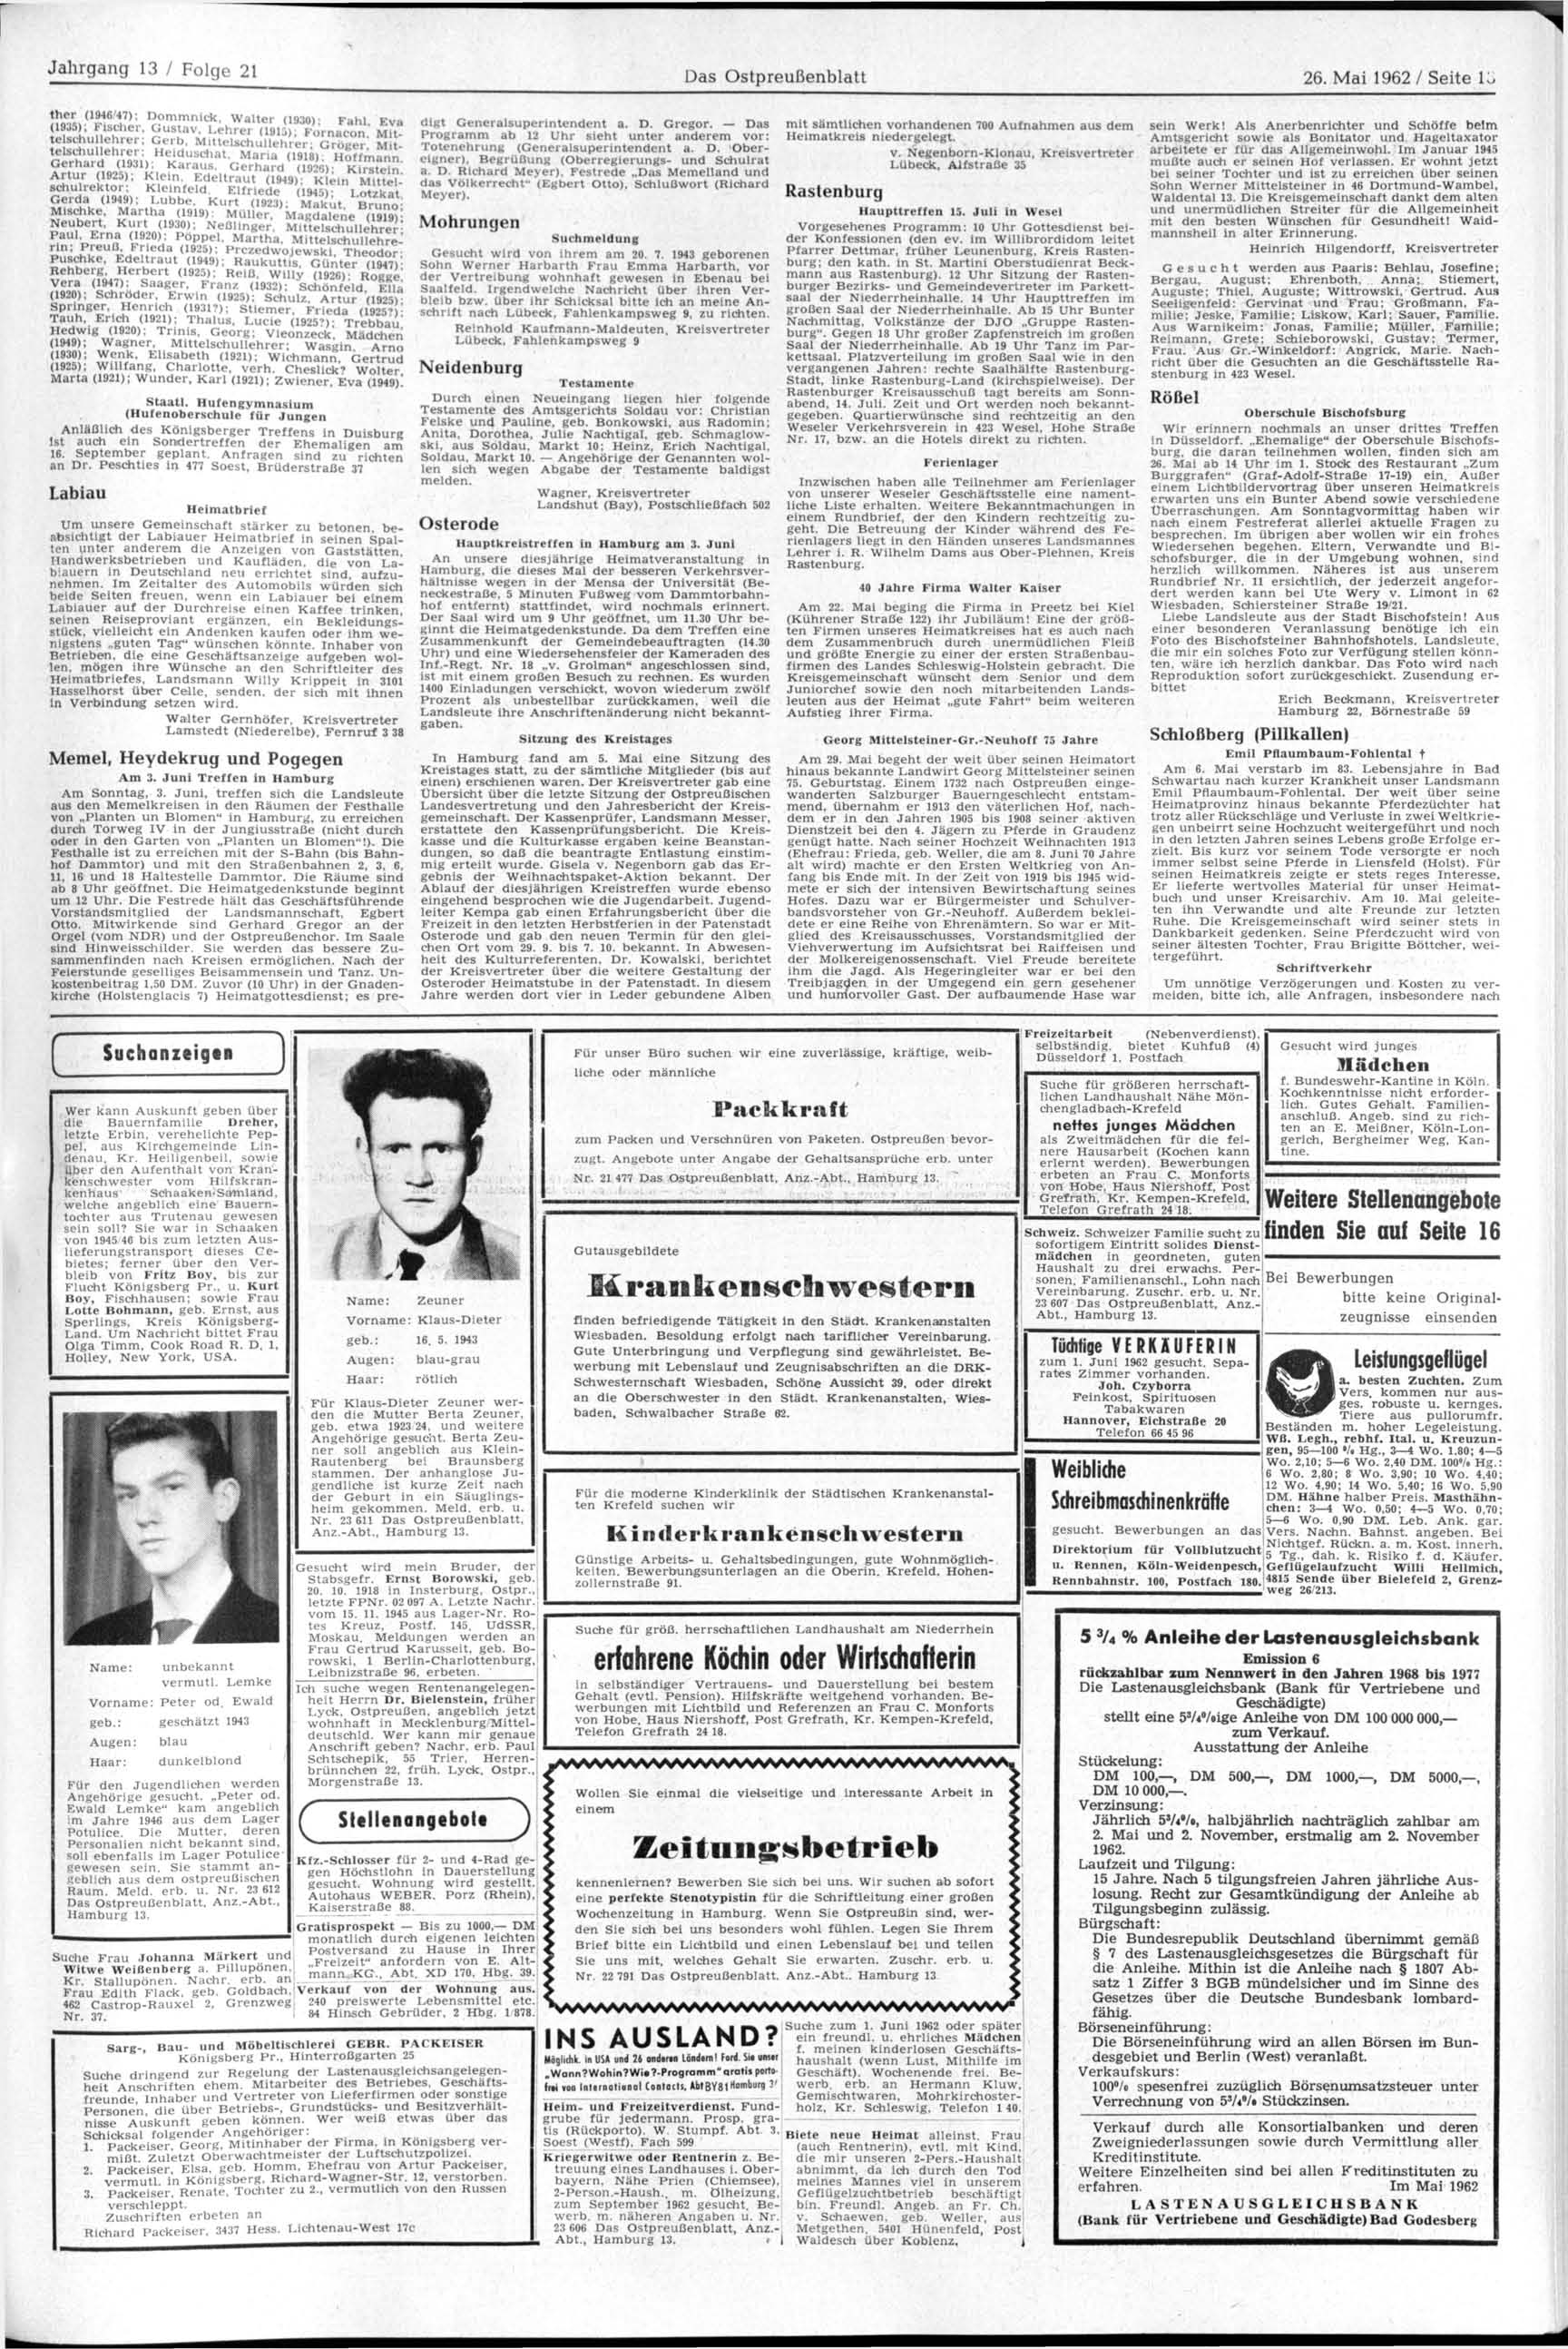 Jahrgang 13 / Folge 21 Das blatt 26. Mai 1962/ Seite lo ther (1946 47); Dommnick, Walter (19301 Fahl P». (1935) Fischer. Gustav. Lehrer,1915 f Fornacon Mitte schuchrer; Gerb.